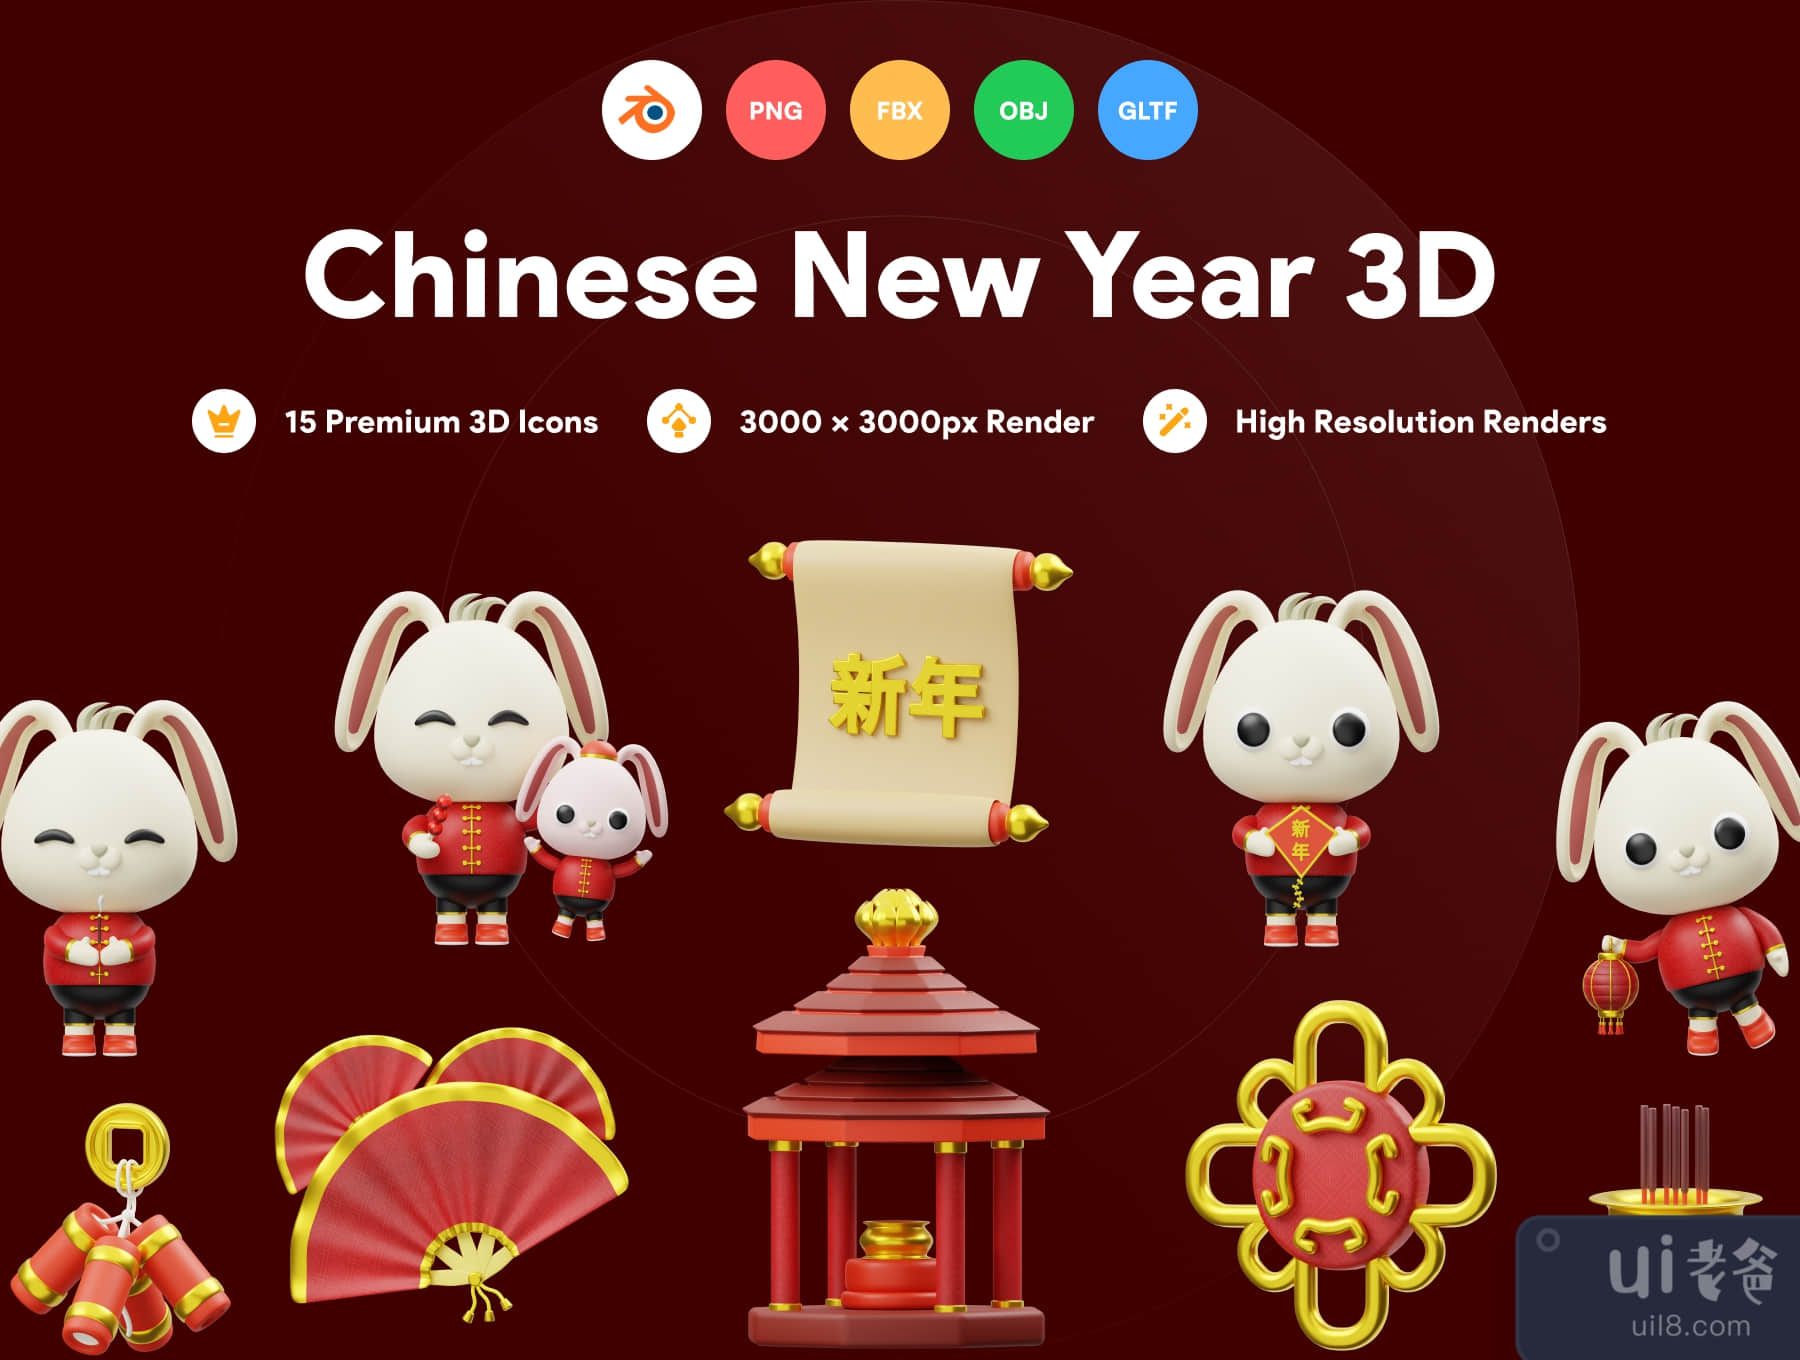 中国新年的3D插图 (Chinese New Year 3D Illustration)插图